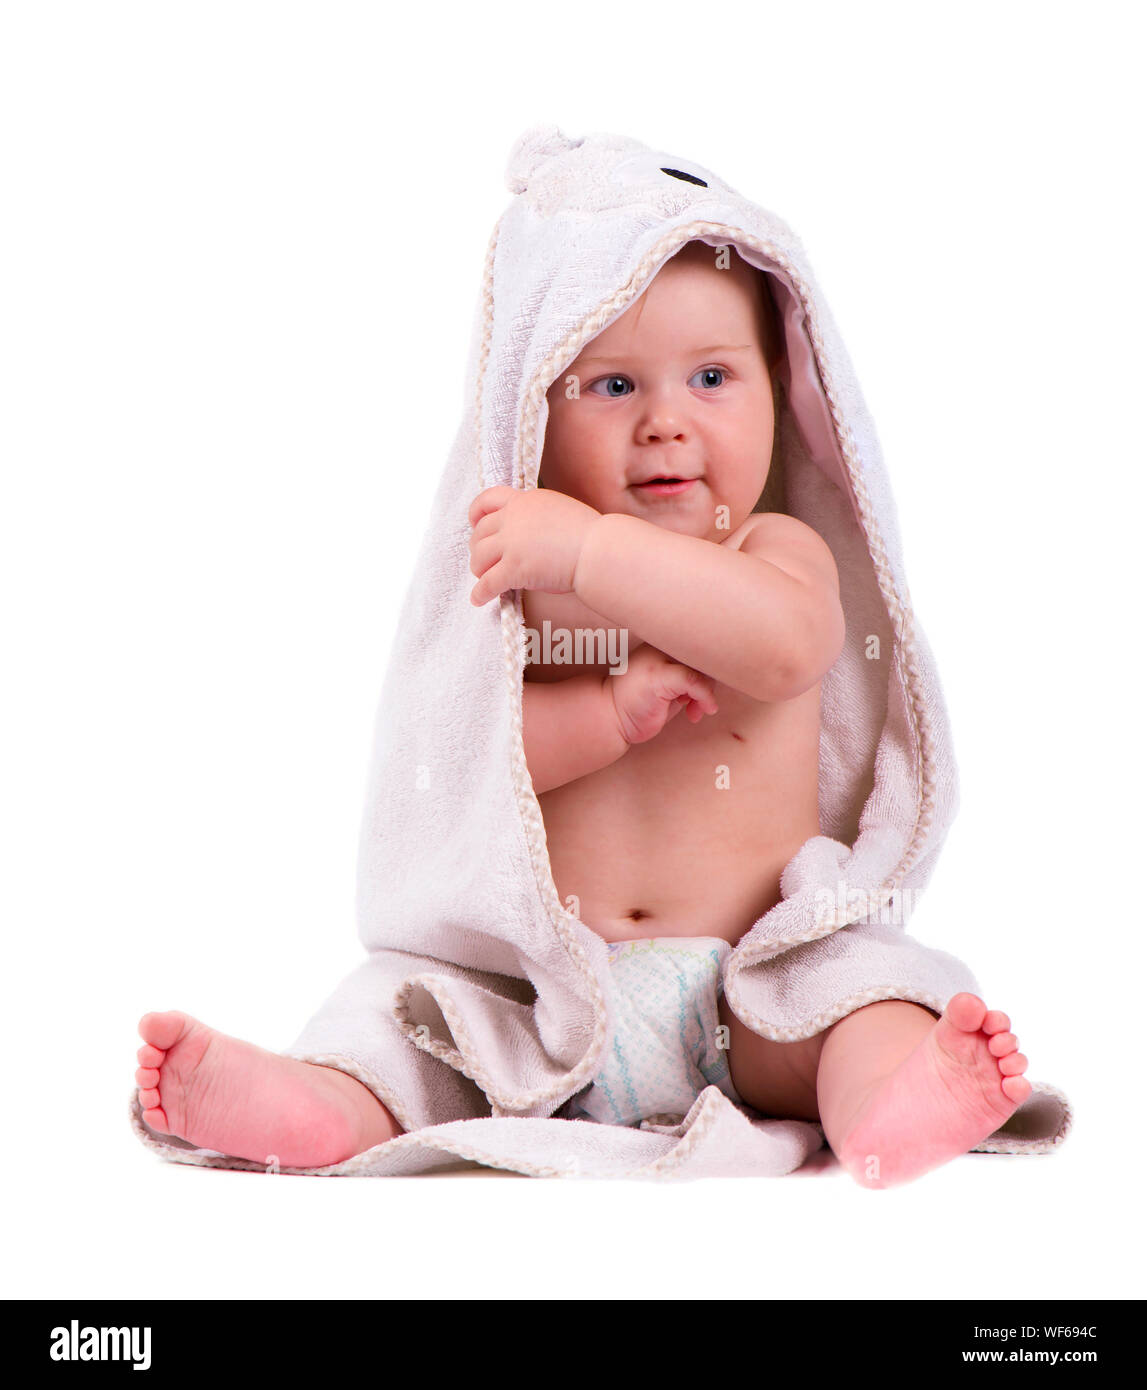 Adorable Happy Baby boy in Badetuch. Baby Junge lächelnd, auf dem Boden  sitzend, studio Shot, auf weißem Hintergrund, schöne baby portrait  Stockfotografie - Alamy